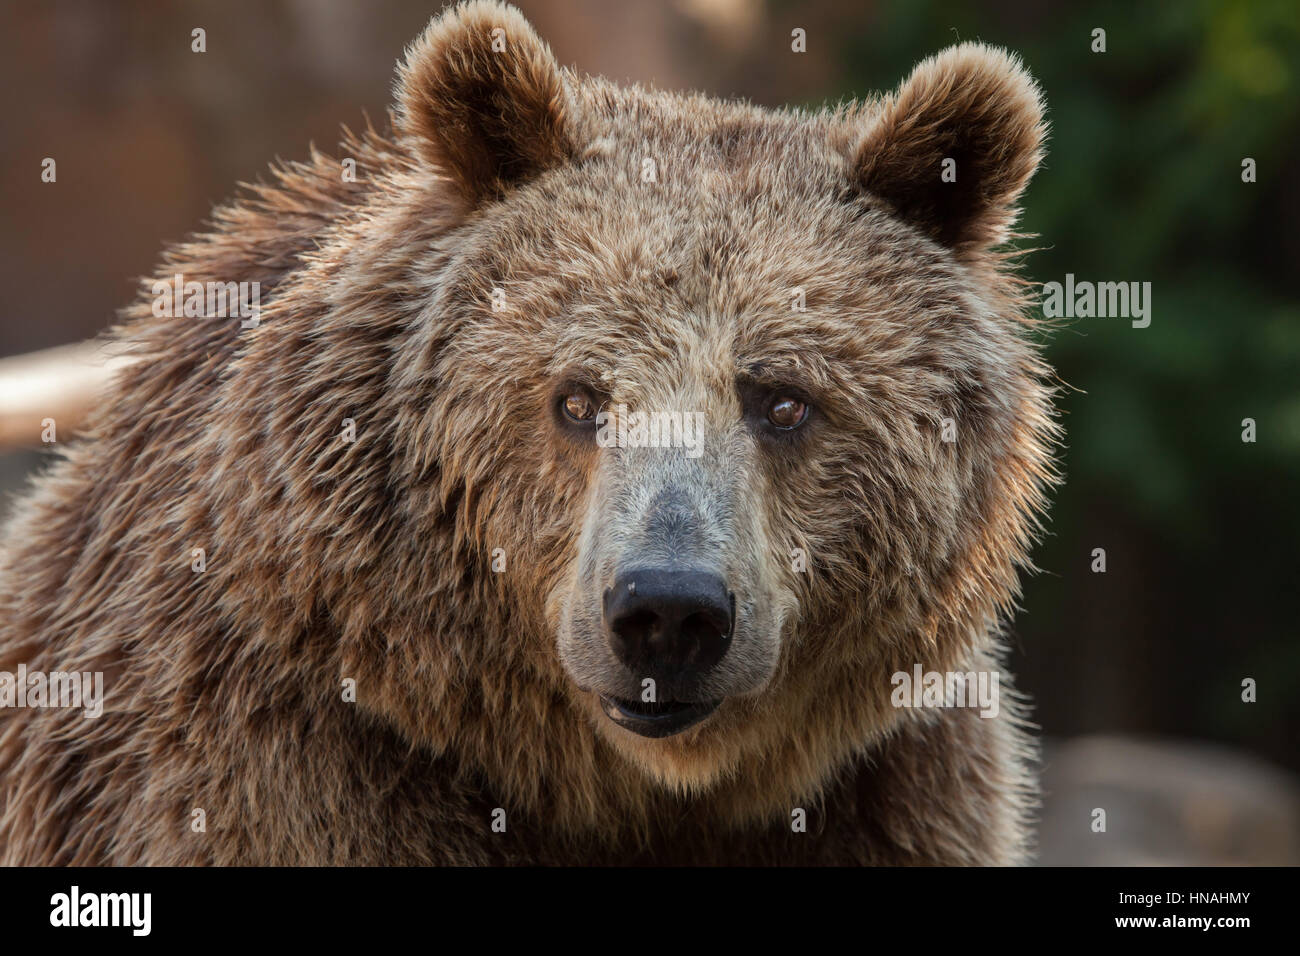 Eurasian brown bear (Ursus arctos arctos), also known as the European brown bear. Stock Photo